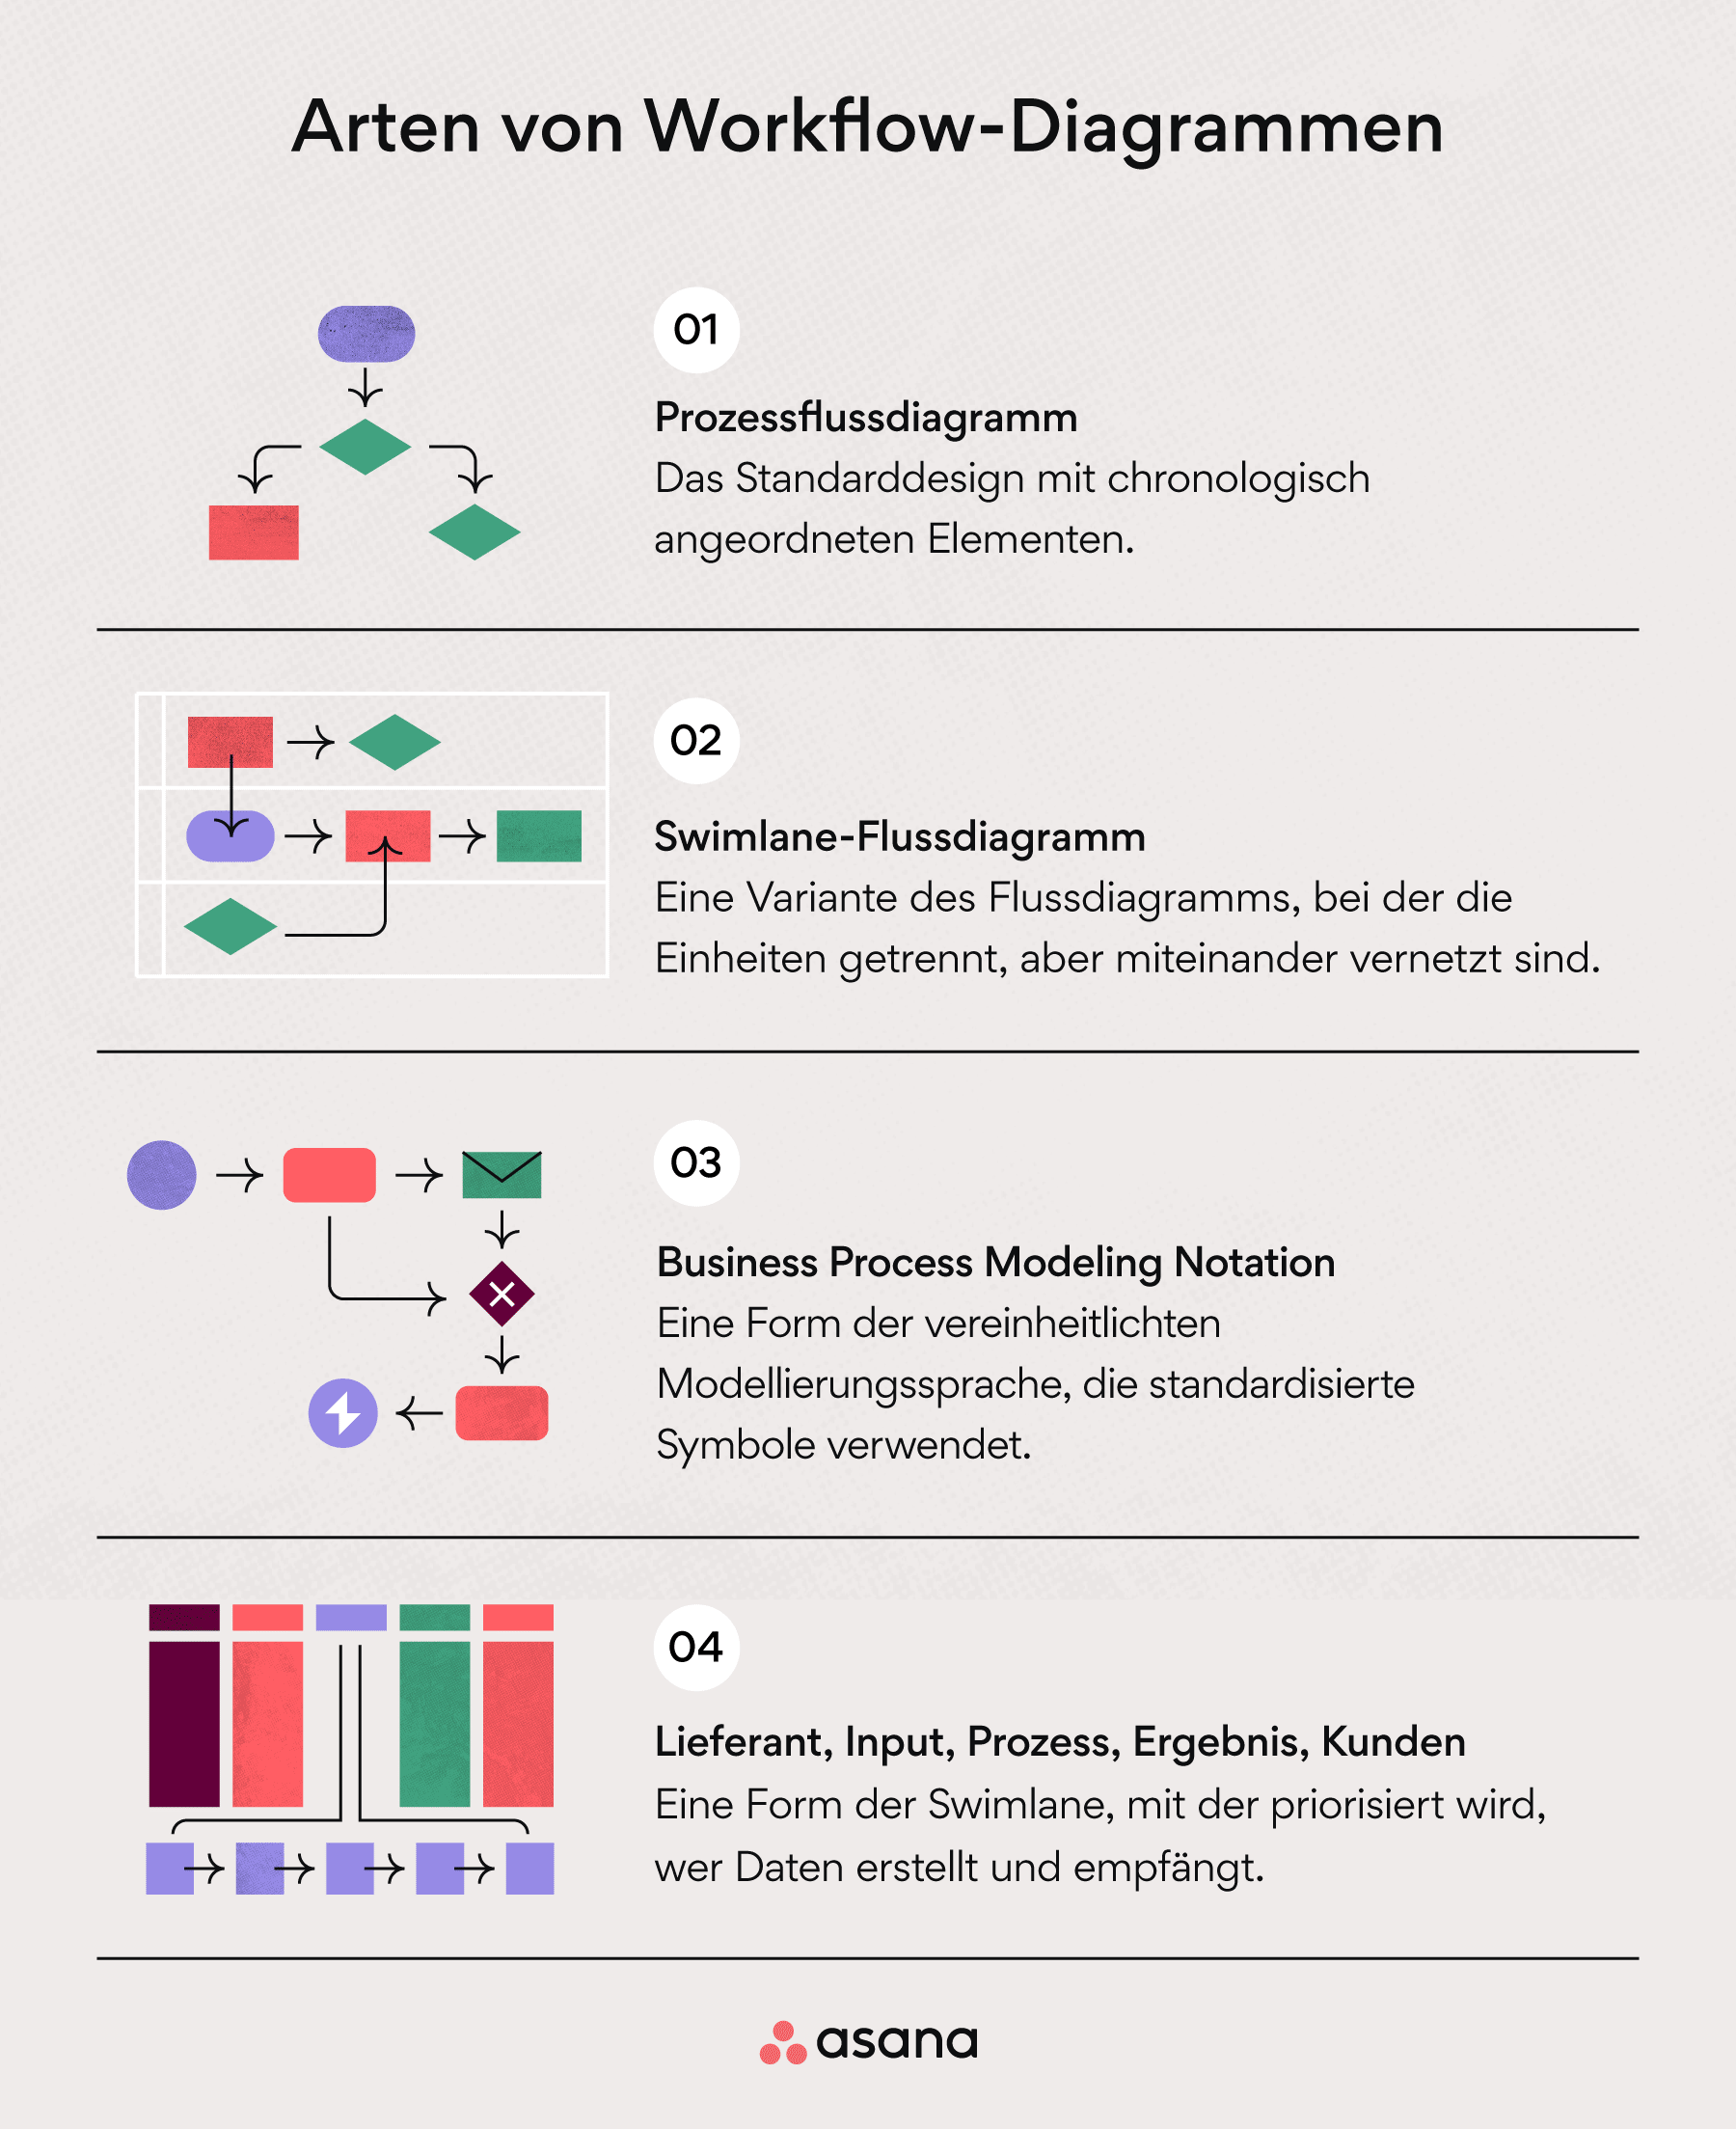 Arten von Workflow-Diagrammen